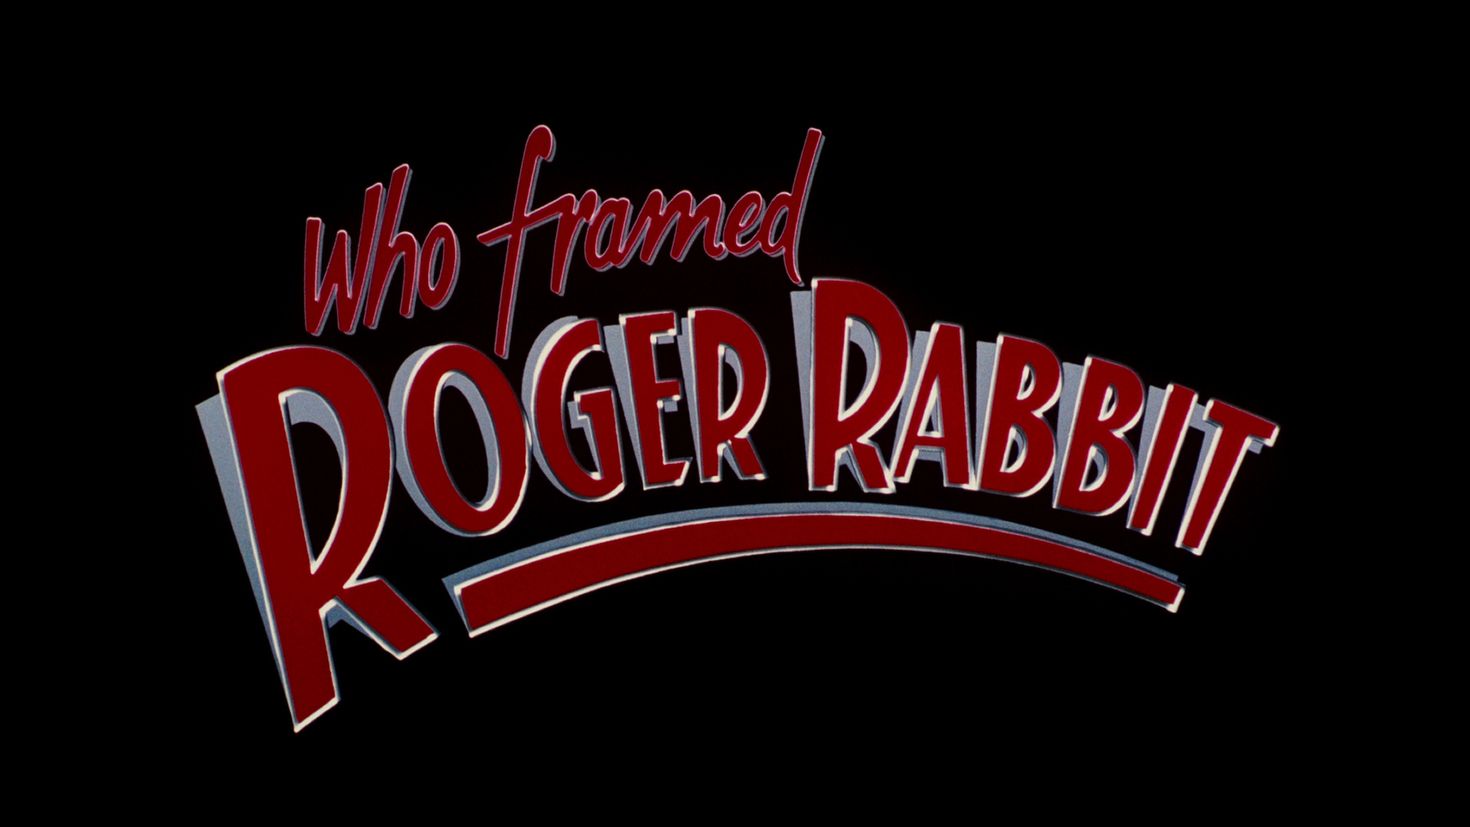 Roger Rabbit frame